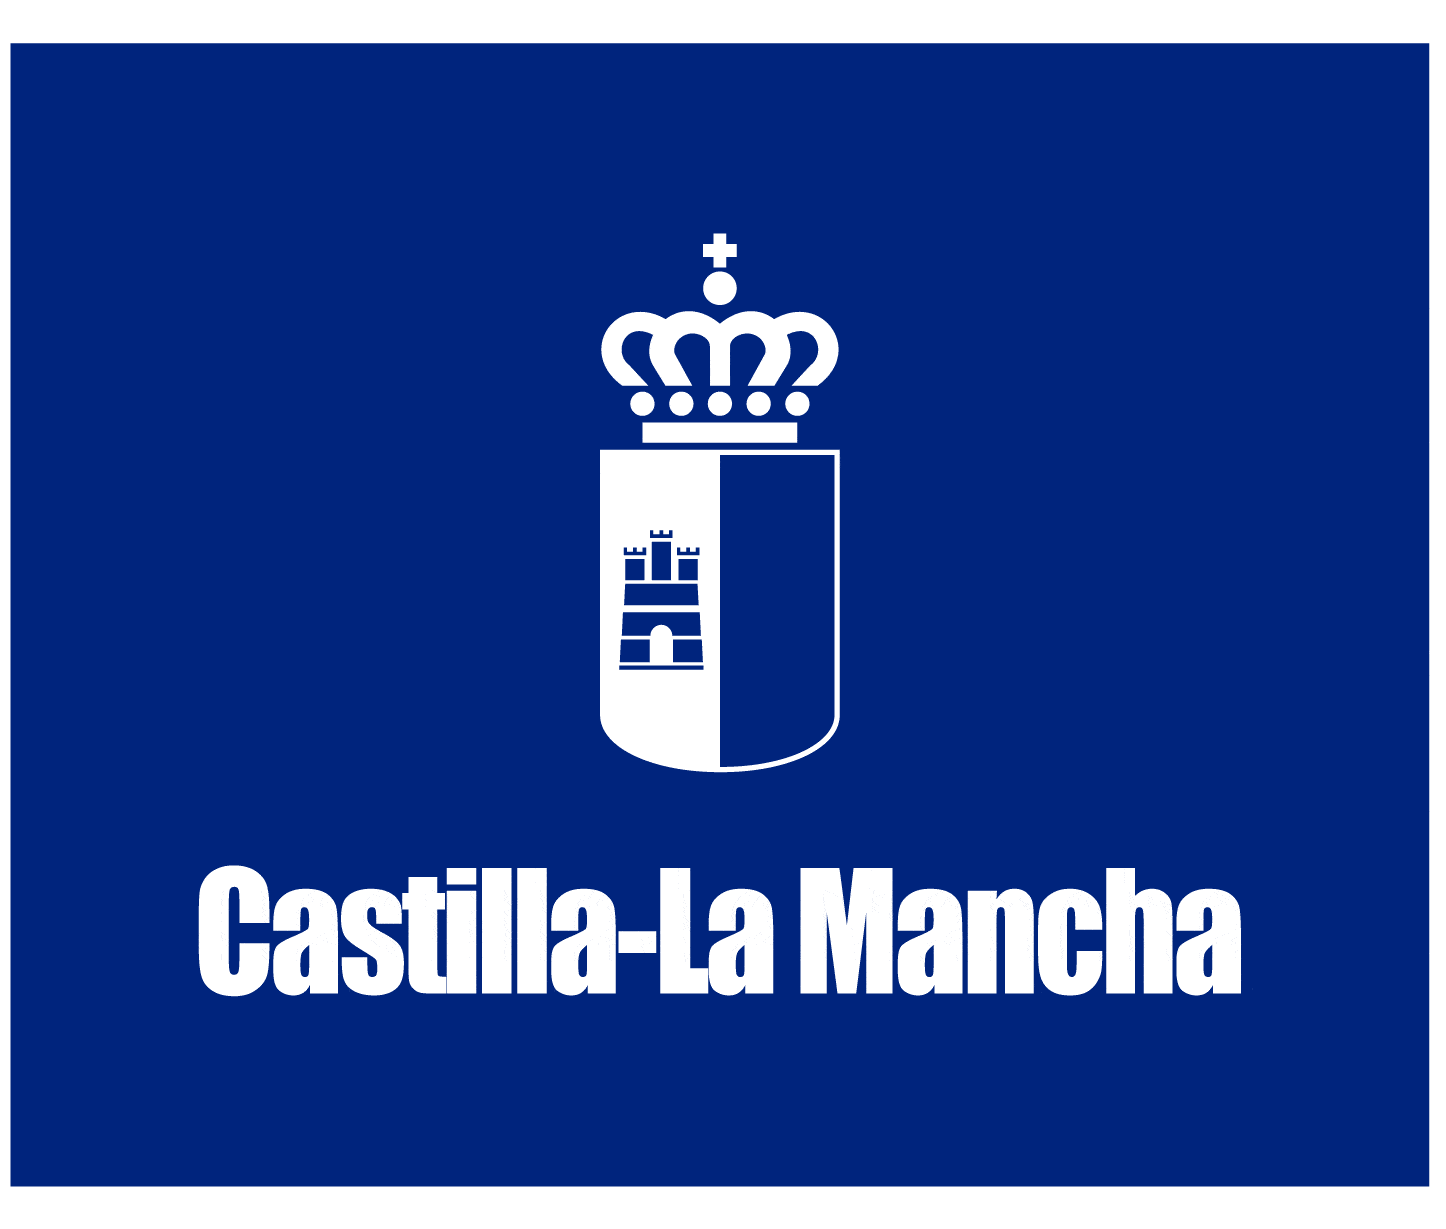 Logo Castilla-La Mancha